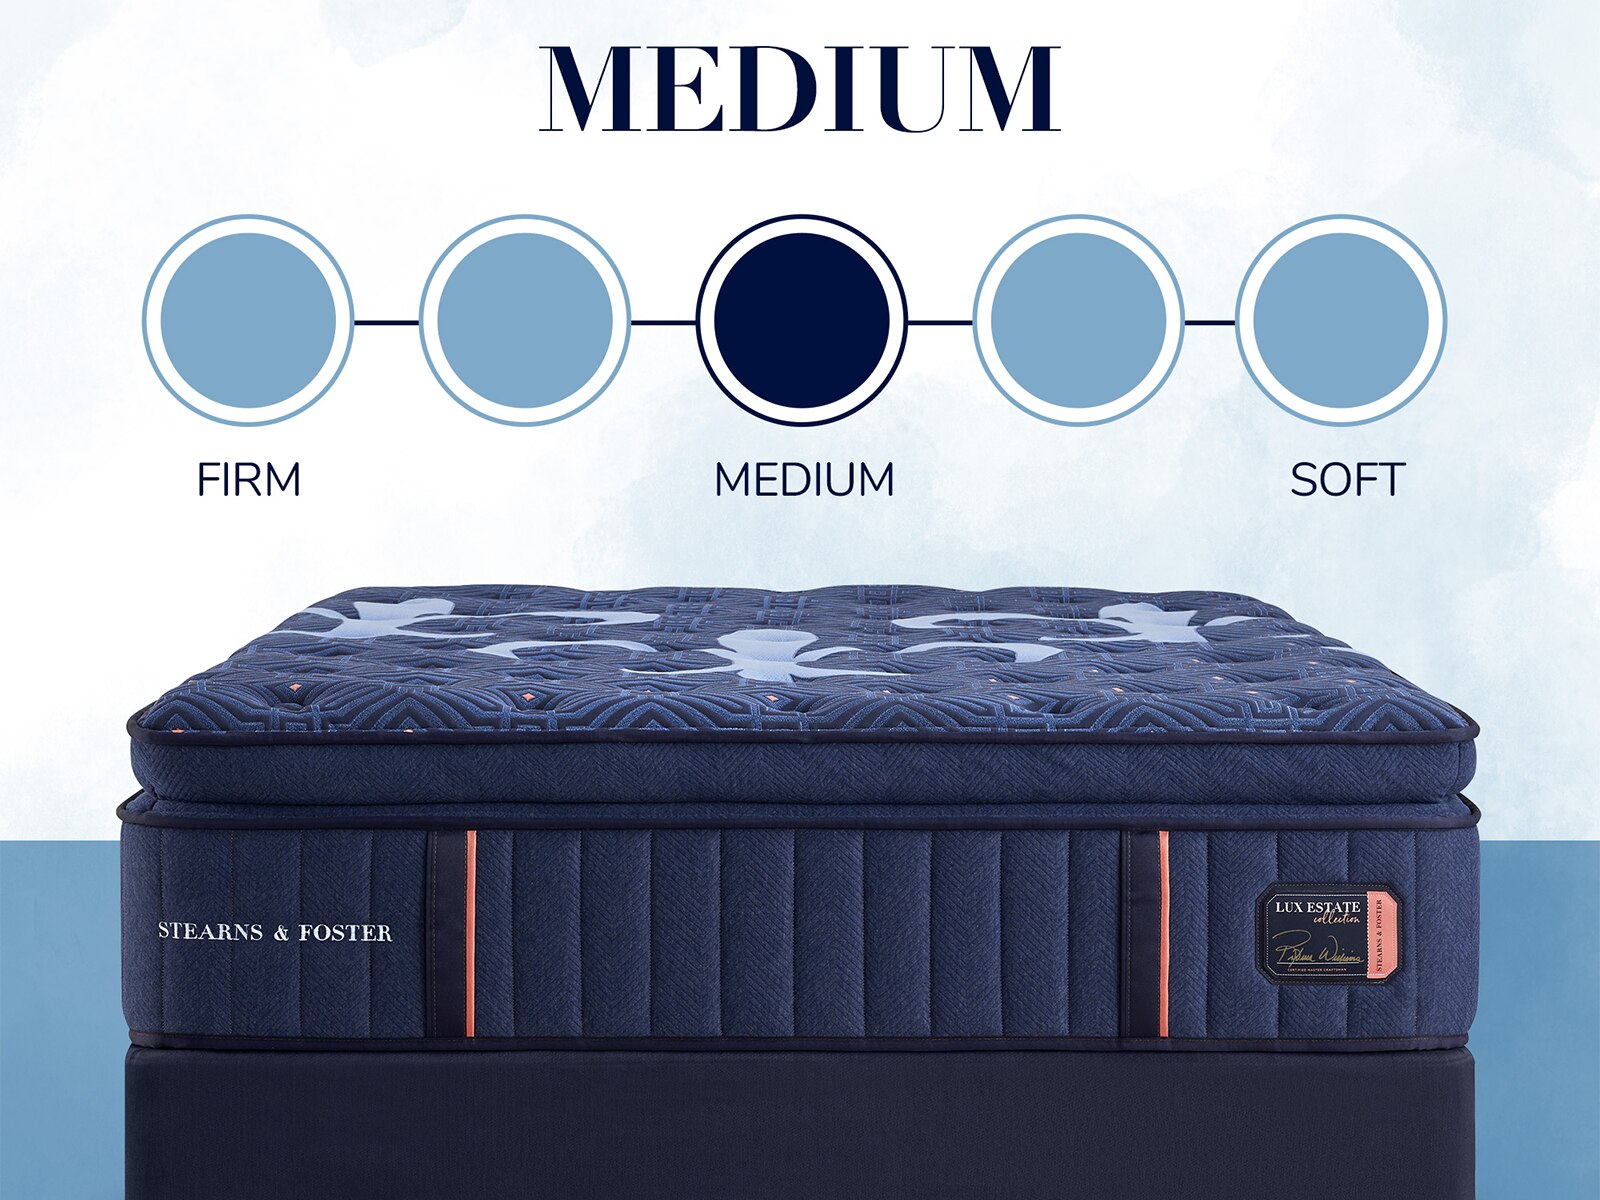 mattress firm dream bed lux 640 reviews